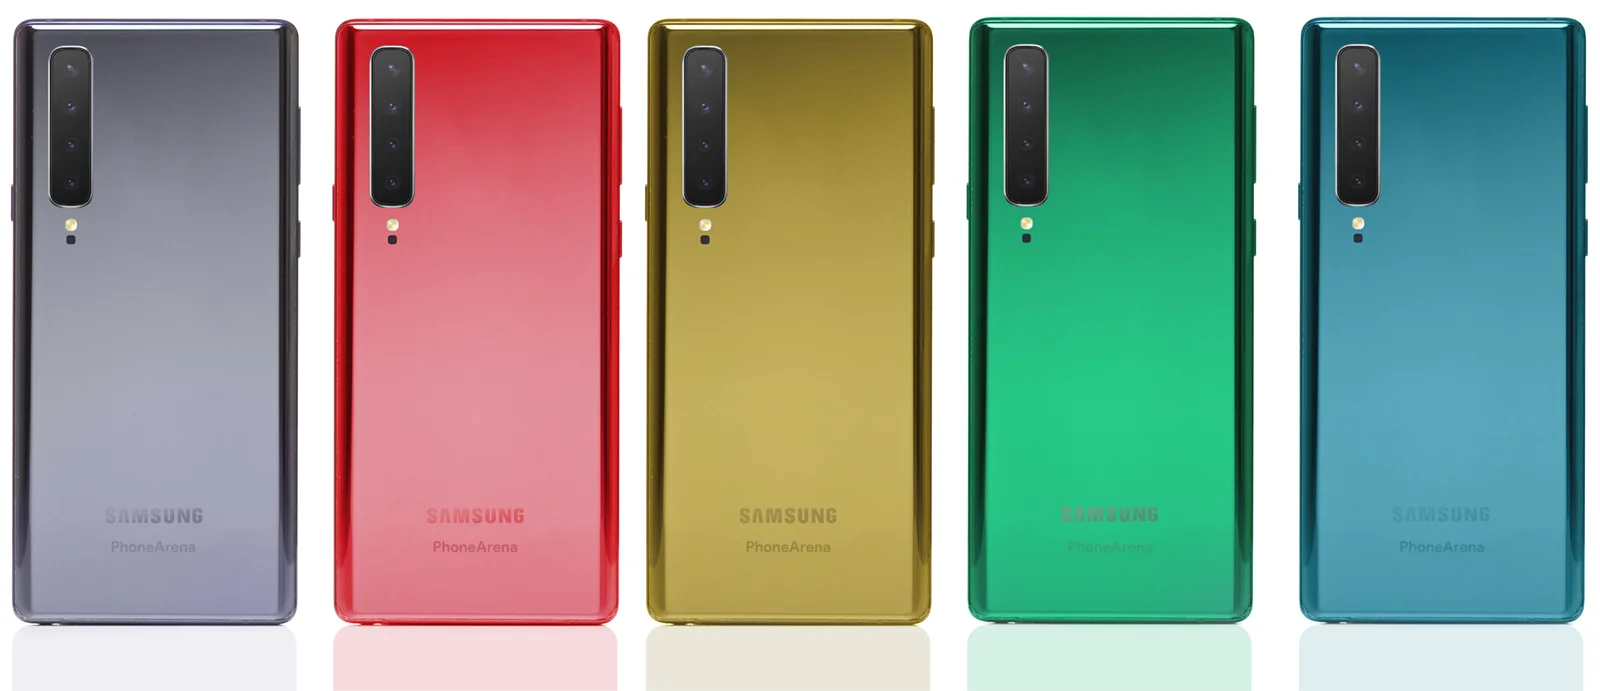 Samsung Galaxy Note 10 появился на новых снимках высокого качества - фото 2